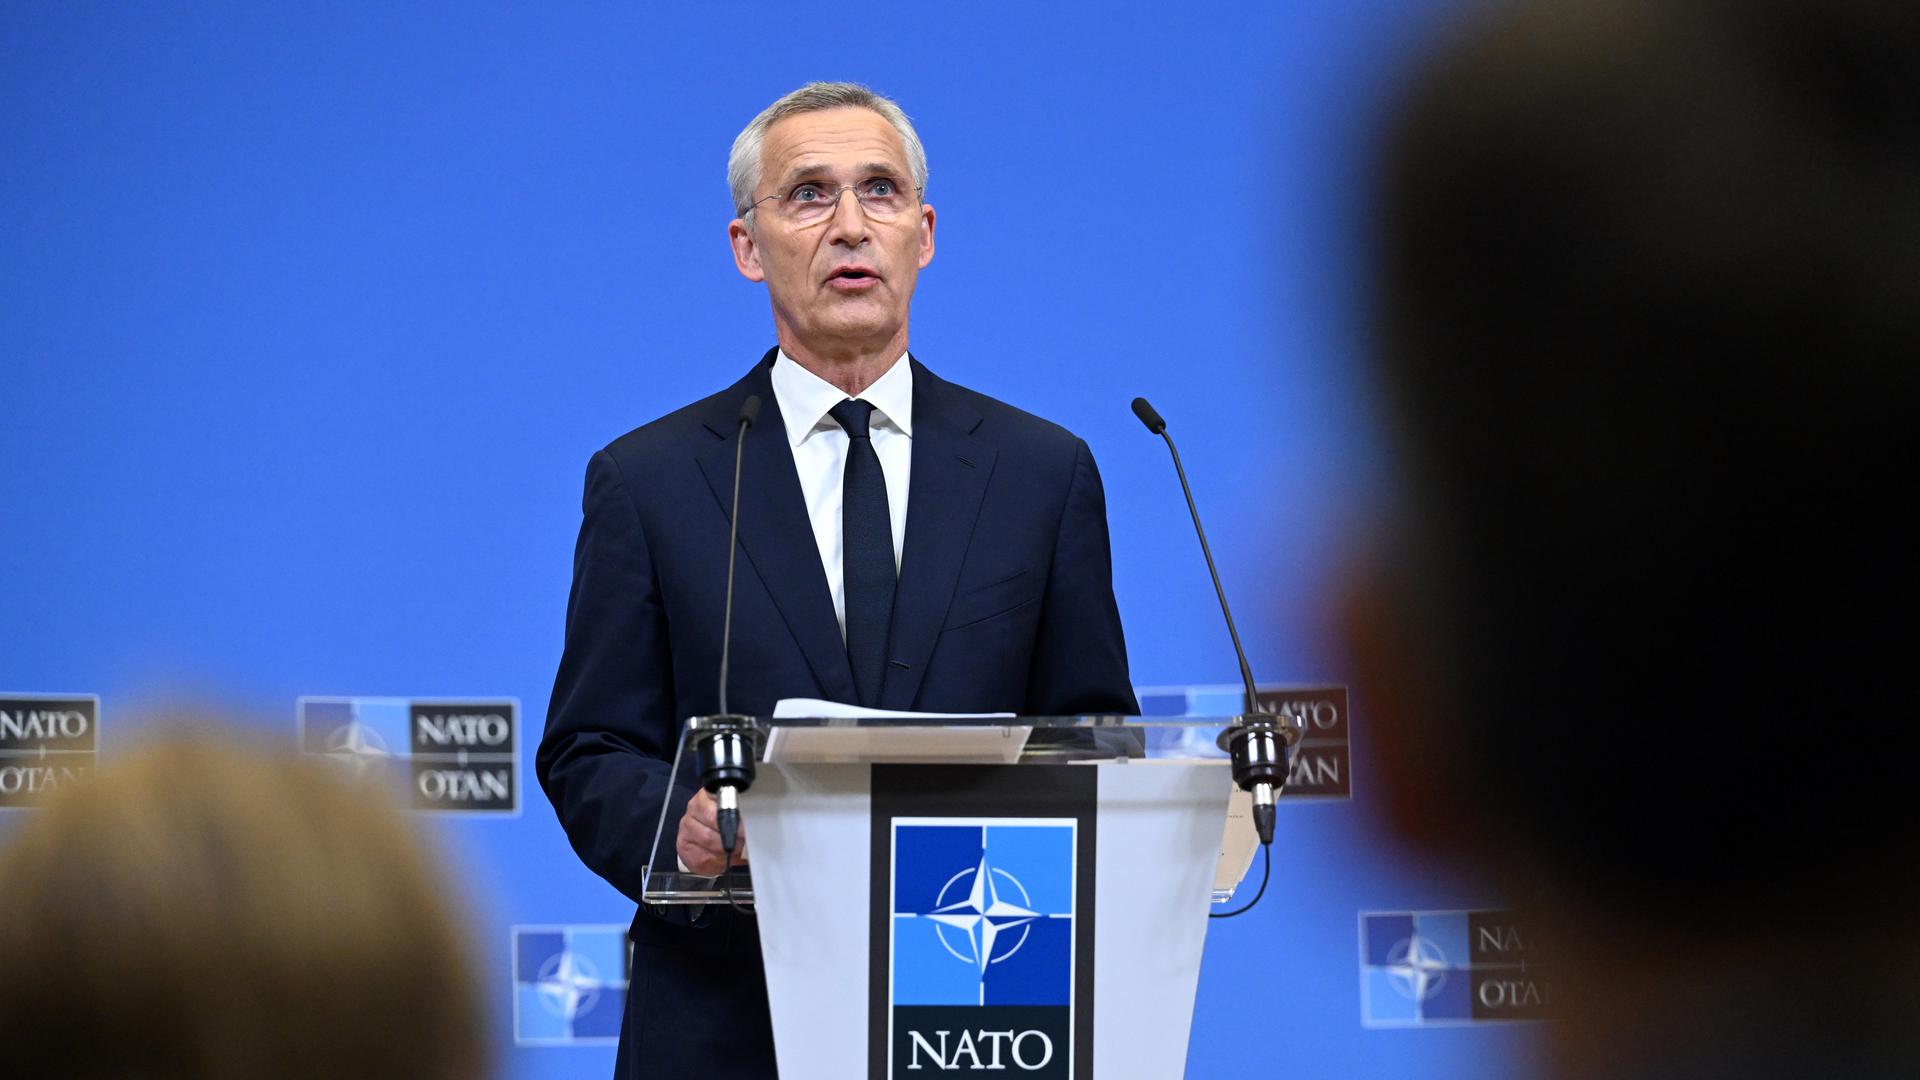 NATOGeneralsekretär Jens Stoltenberg spricht auf einer Pressekonferenz anlässlich des Treffens der NATO Verteidigungsminister in Brüssel.